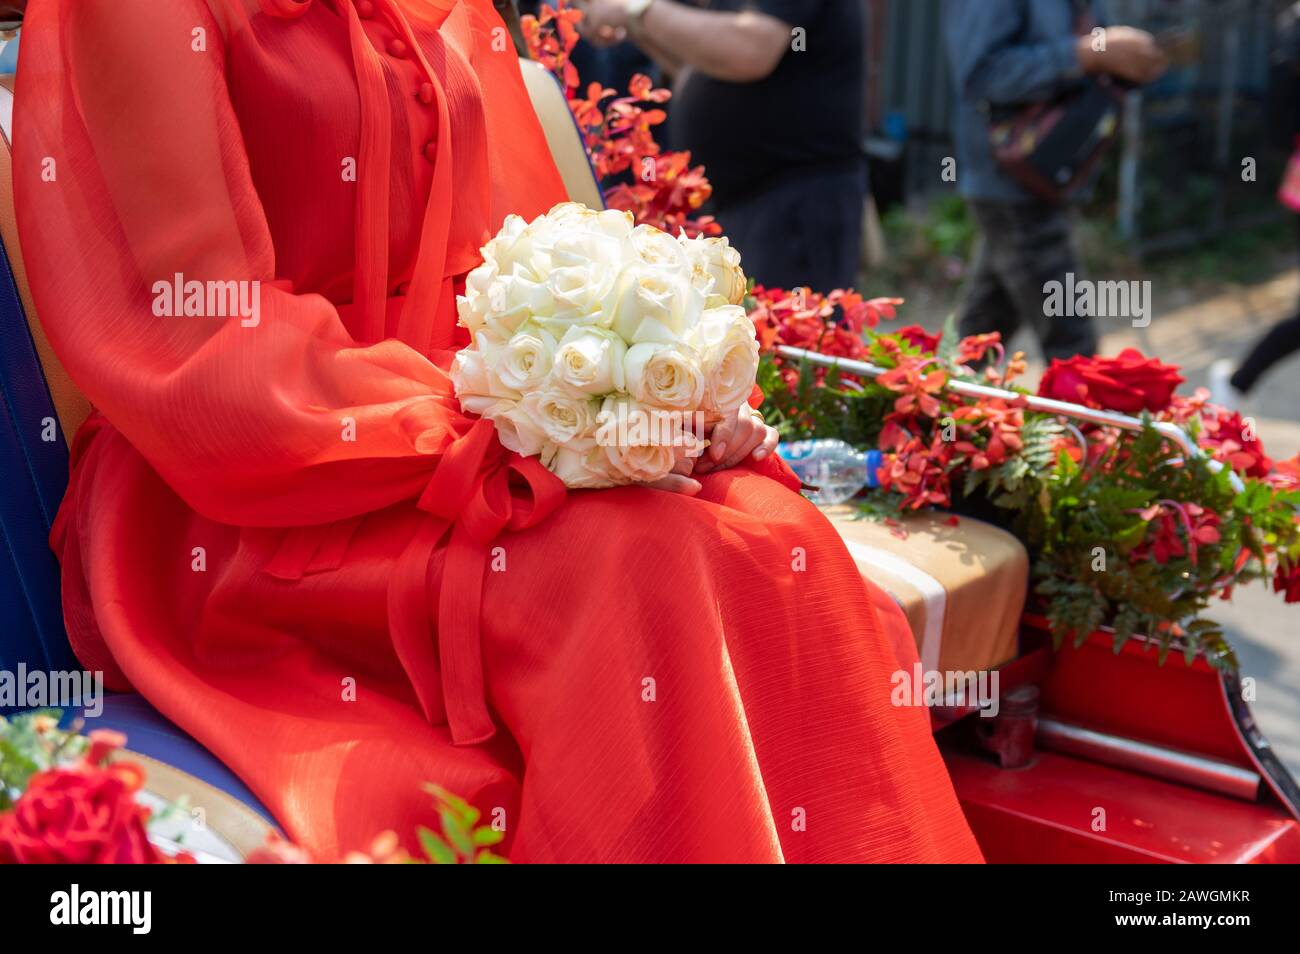 Bild der weißen Rosen auf dem Schoß einer Frau in einem roten Kleid - ausgewählter Fokus auf Blume Stockfoto